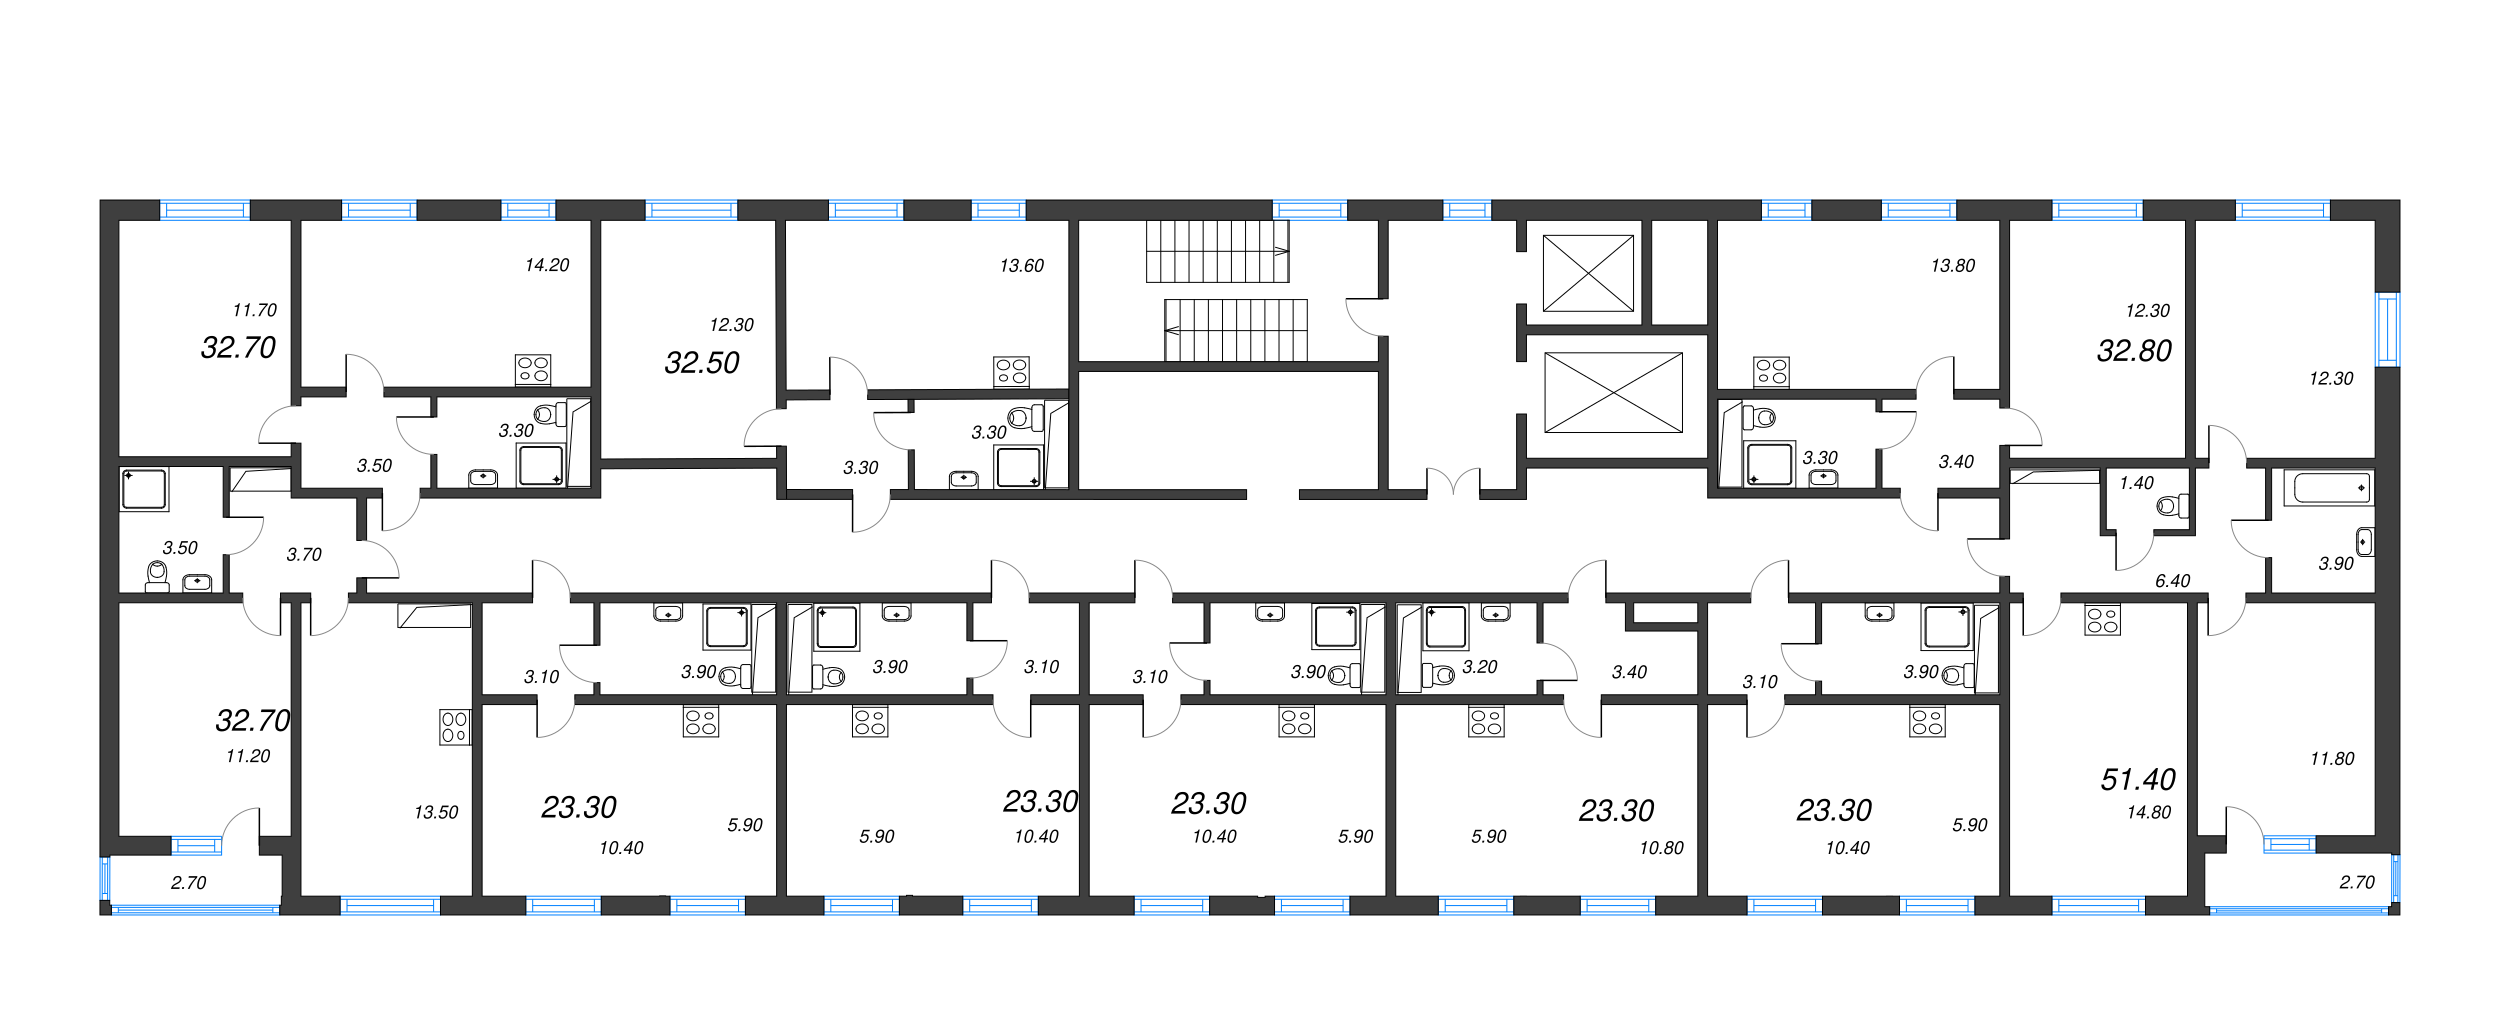 2-комнатная квартира, 51.4 м² в ЖК "ЛСР. Ржевский парк" - планировка этажа